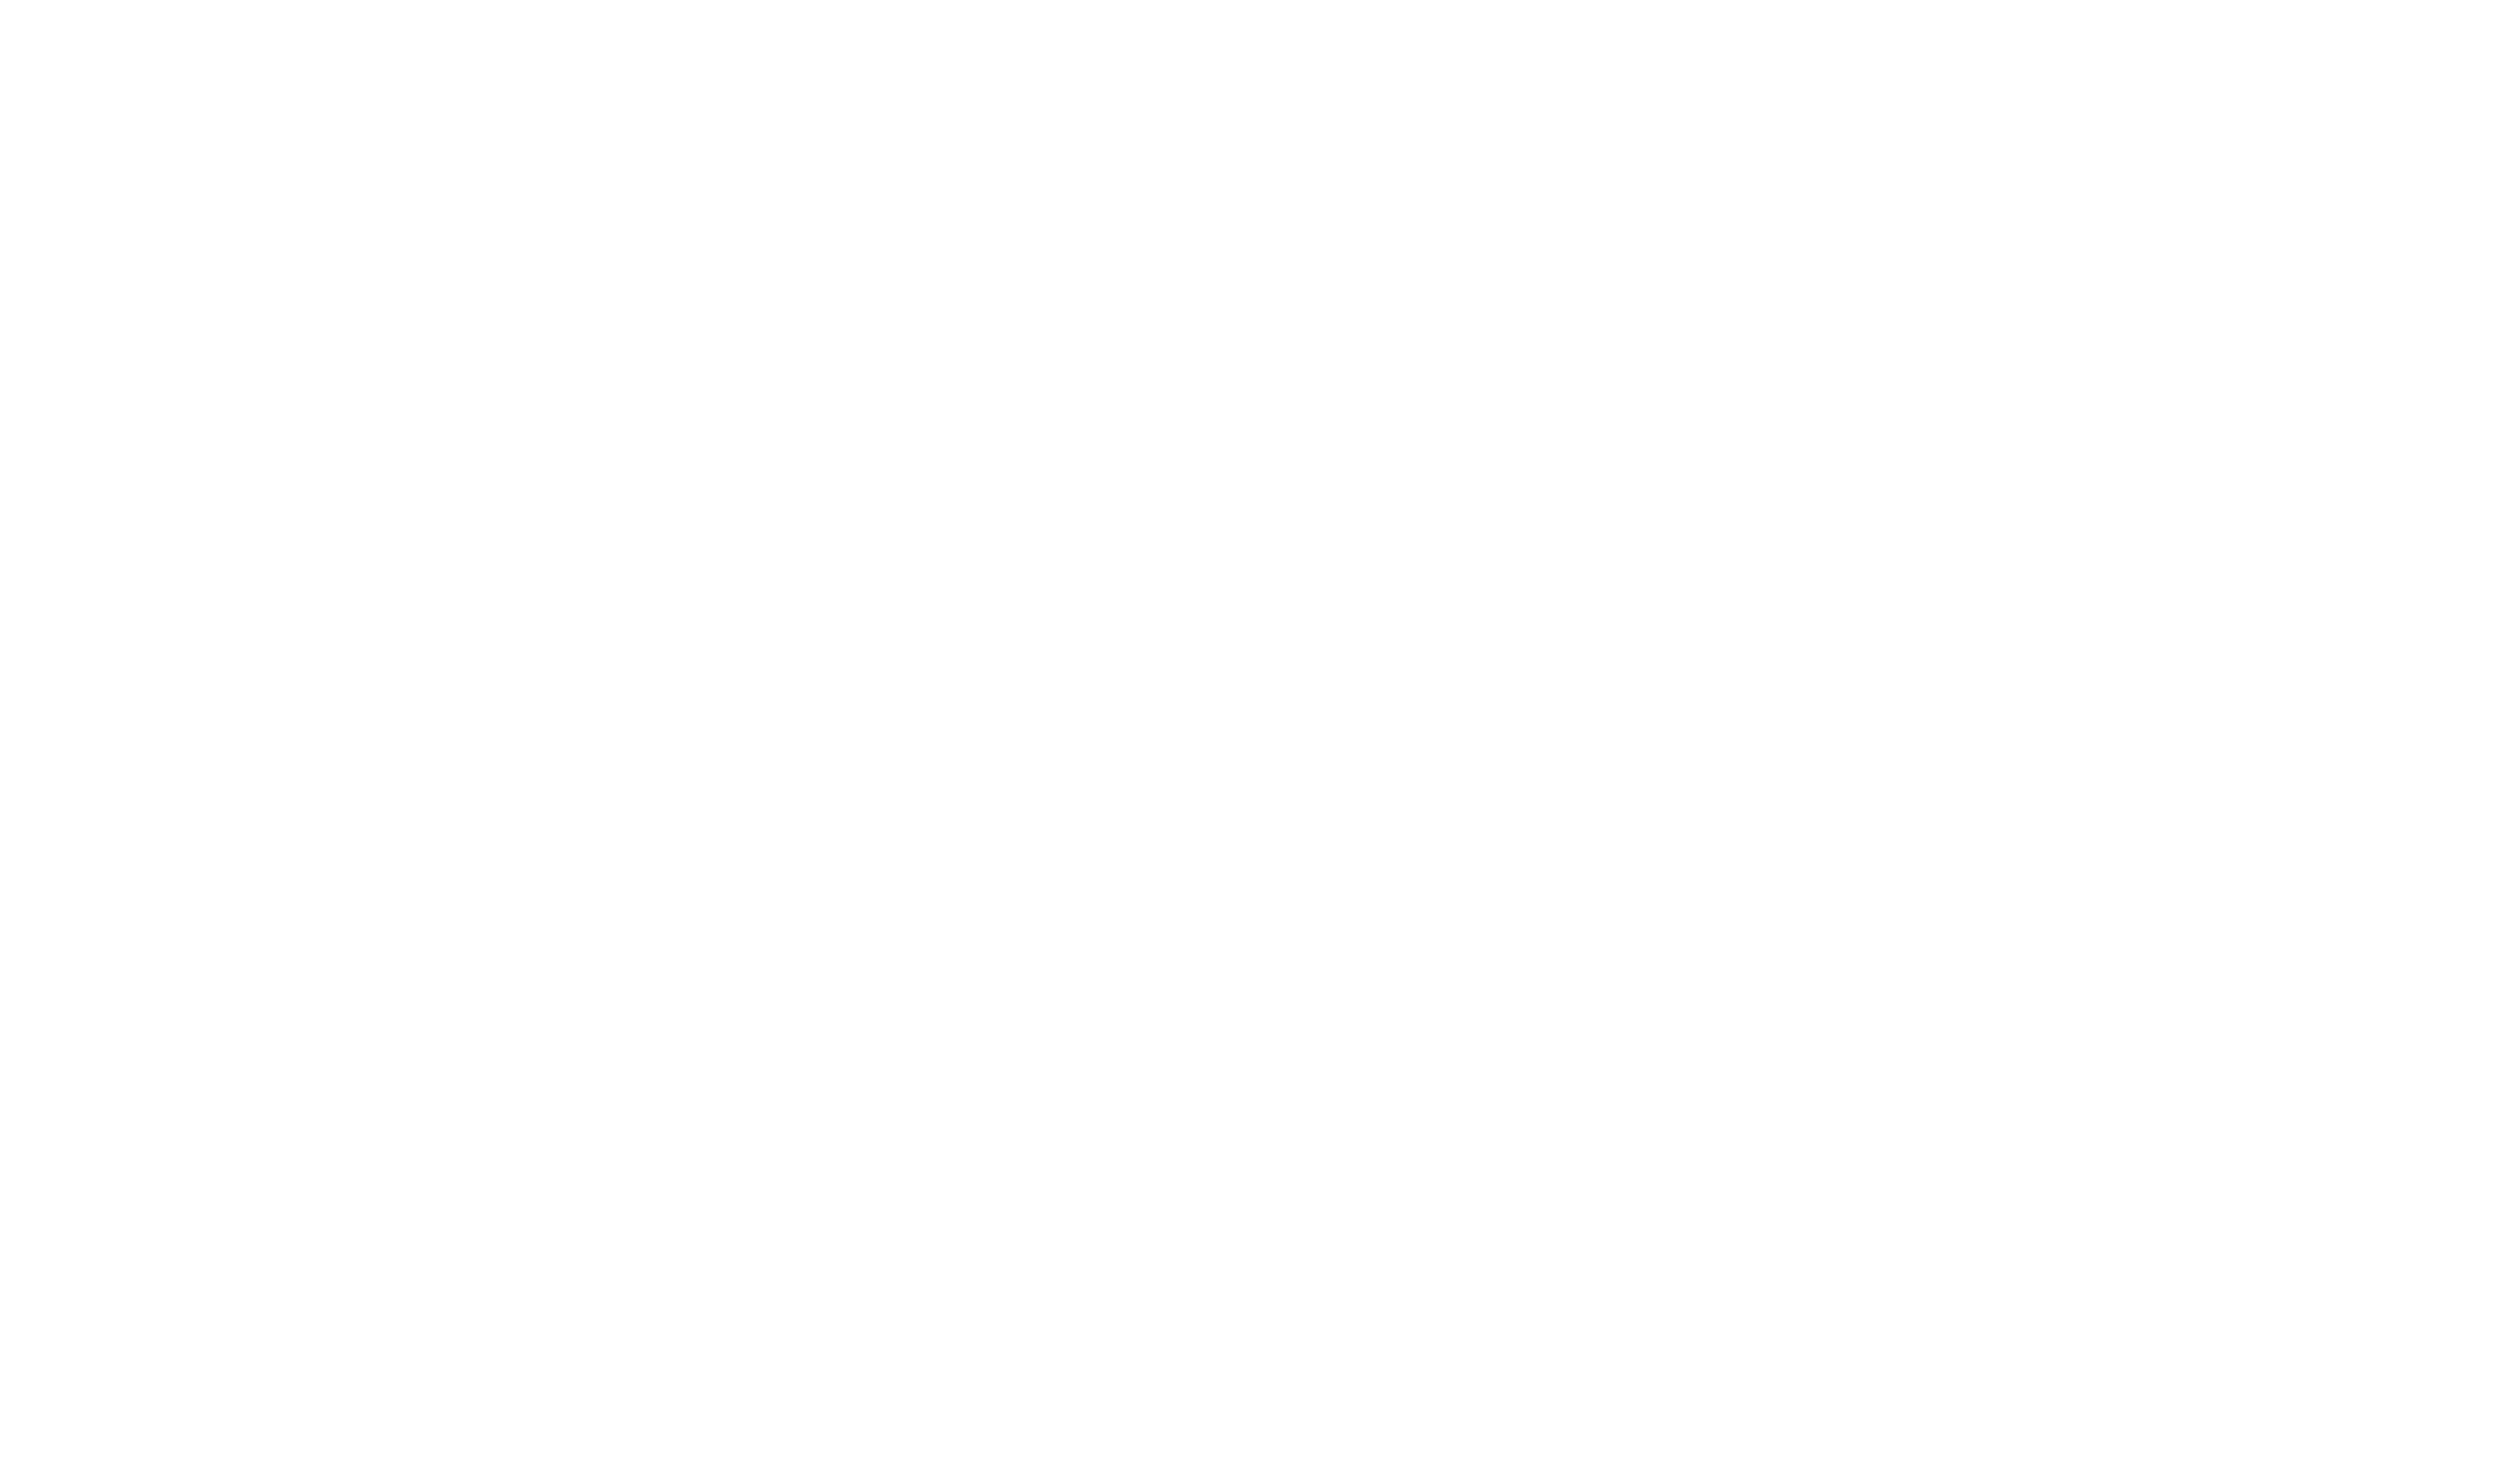 Logo findwyl blanc